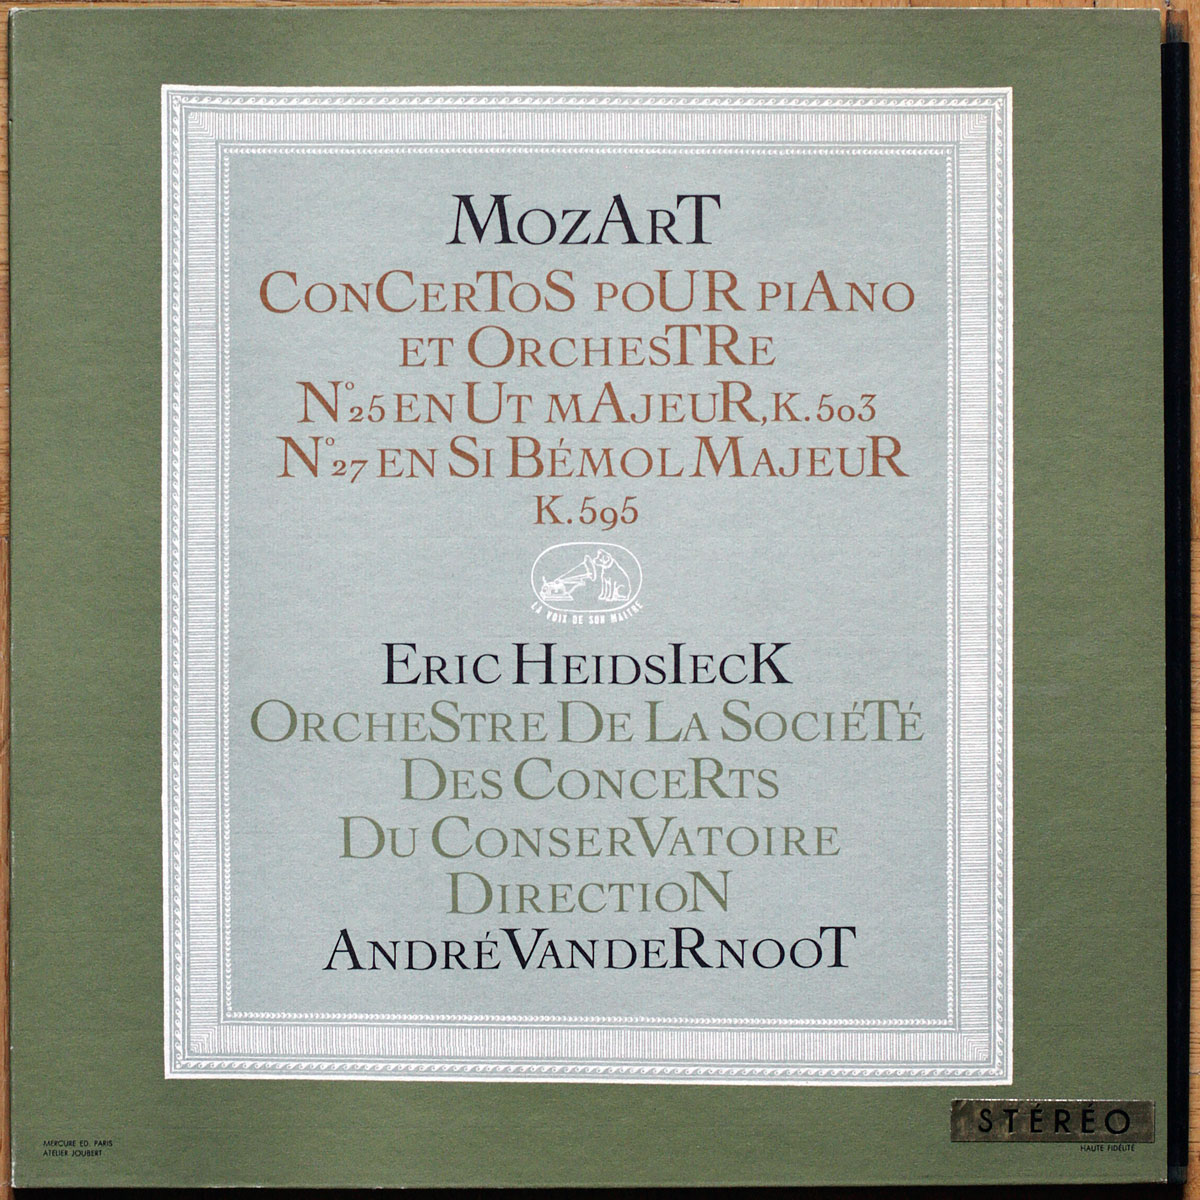 Mozart • Concertos pour piano n° 25 – KV 503 & n° 27 – KV 595 • FALP 719 - ASDF 254 • Orchestre de la Société des Concerts du Conservatoire • André Vandernoot